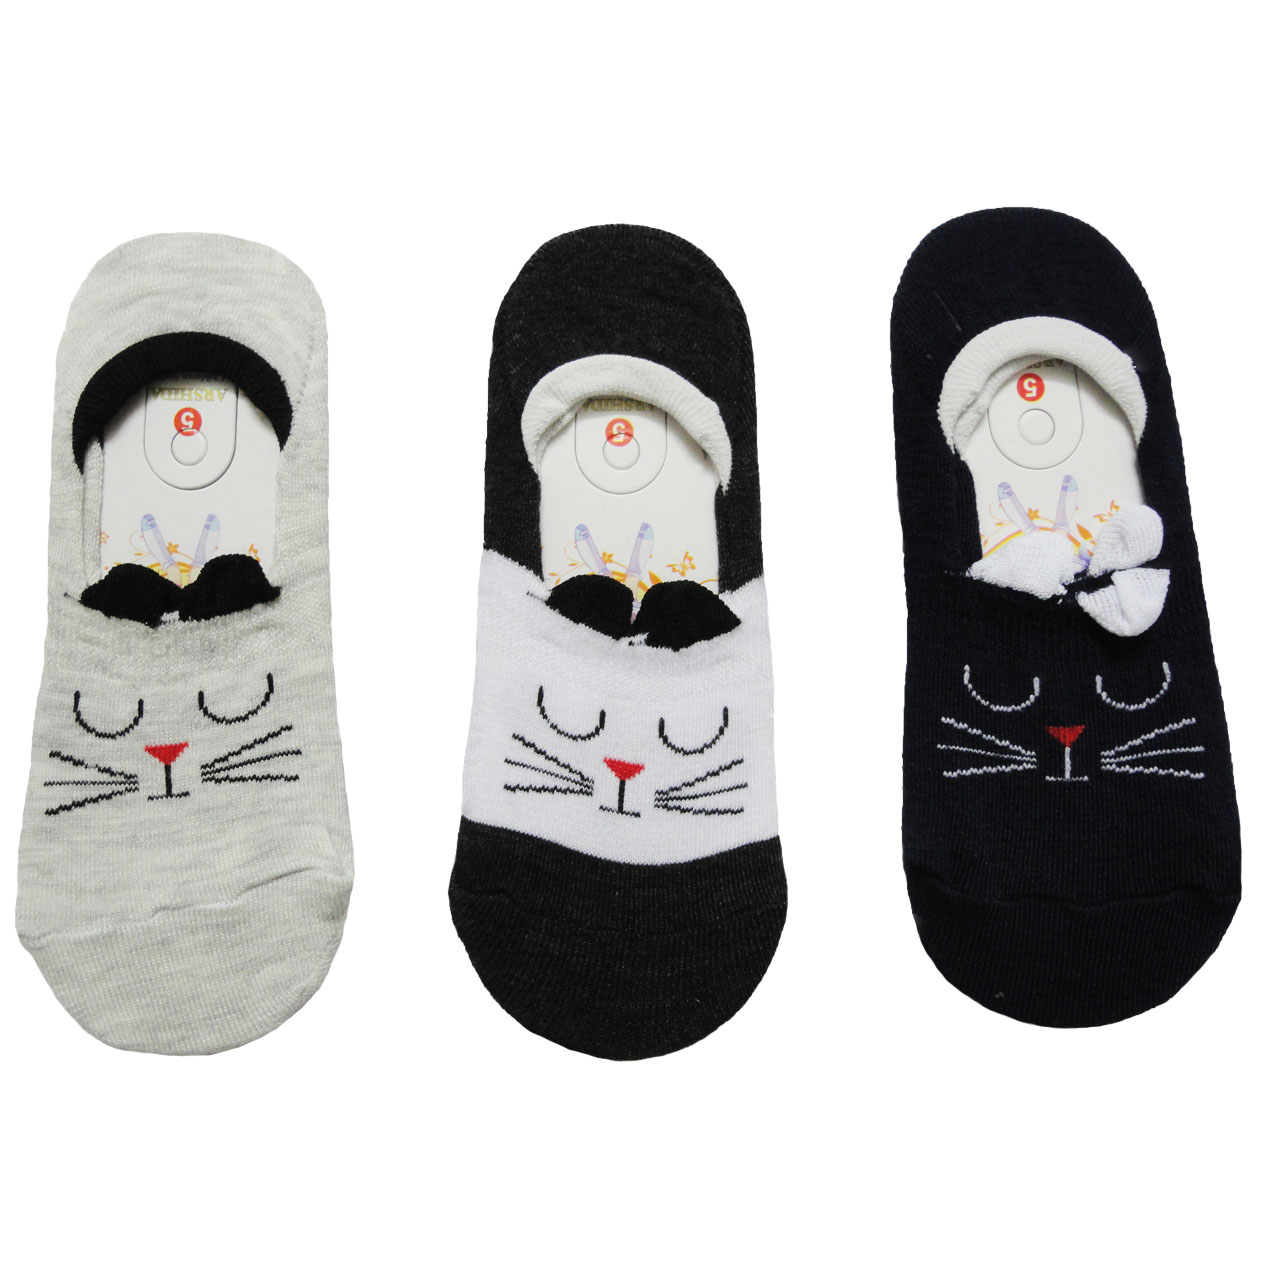 جوراب بچگانه آرشیدا طرح گربه مدل pad1 مجموعه 3 عددی